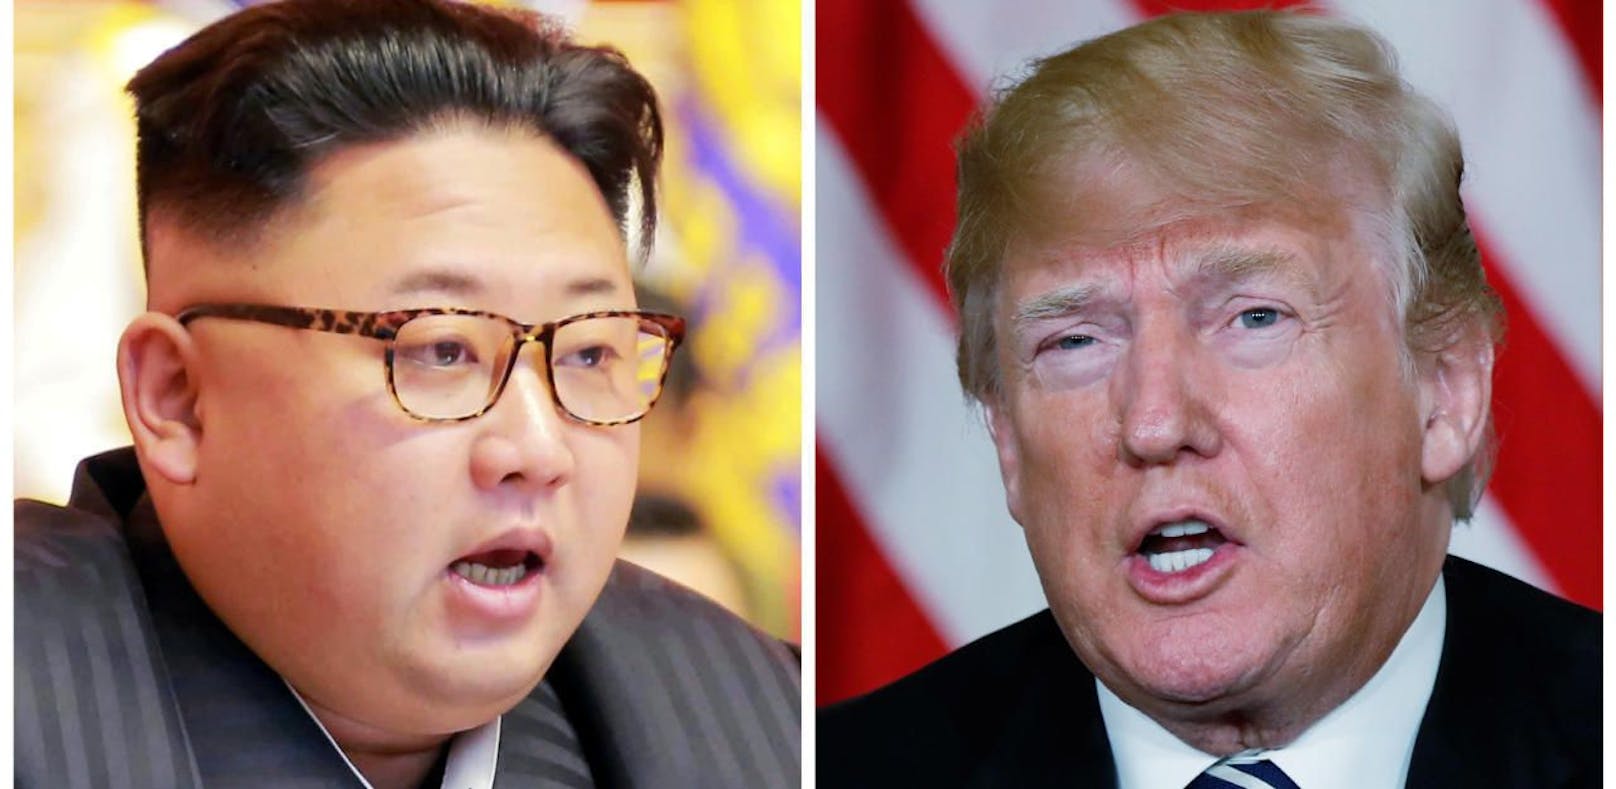 Jetzt steht fest: Am 12. Juni kommt es zum Gipfeltreffen zwischen USA und Nordkorea. 